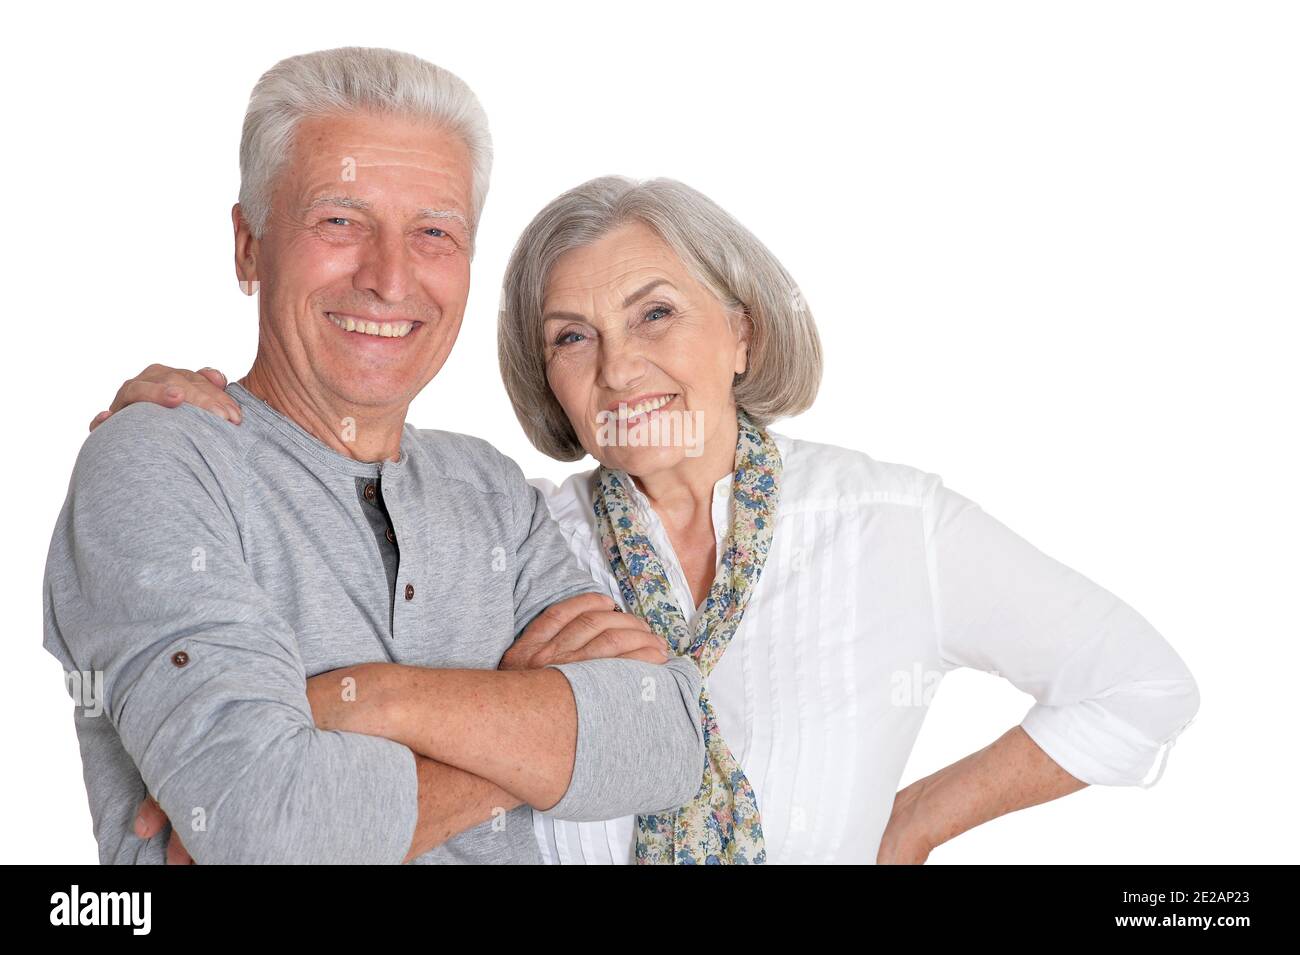 Happy senior couple posing isolated on white background Stock Photo